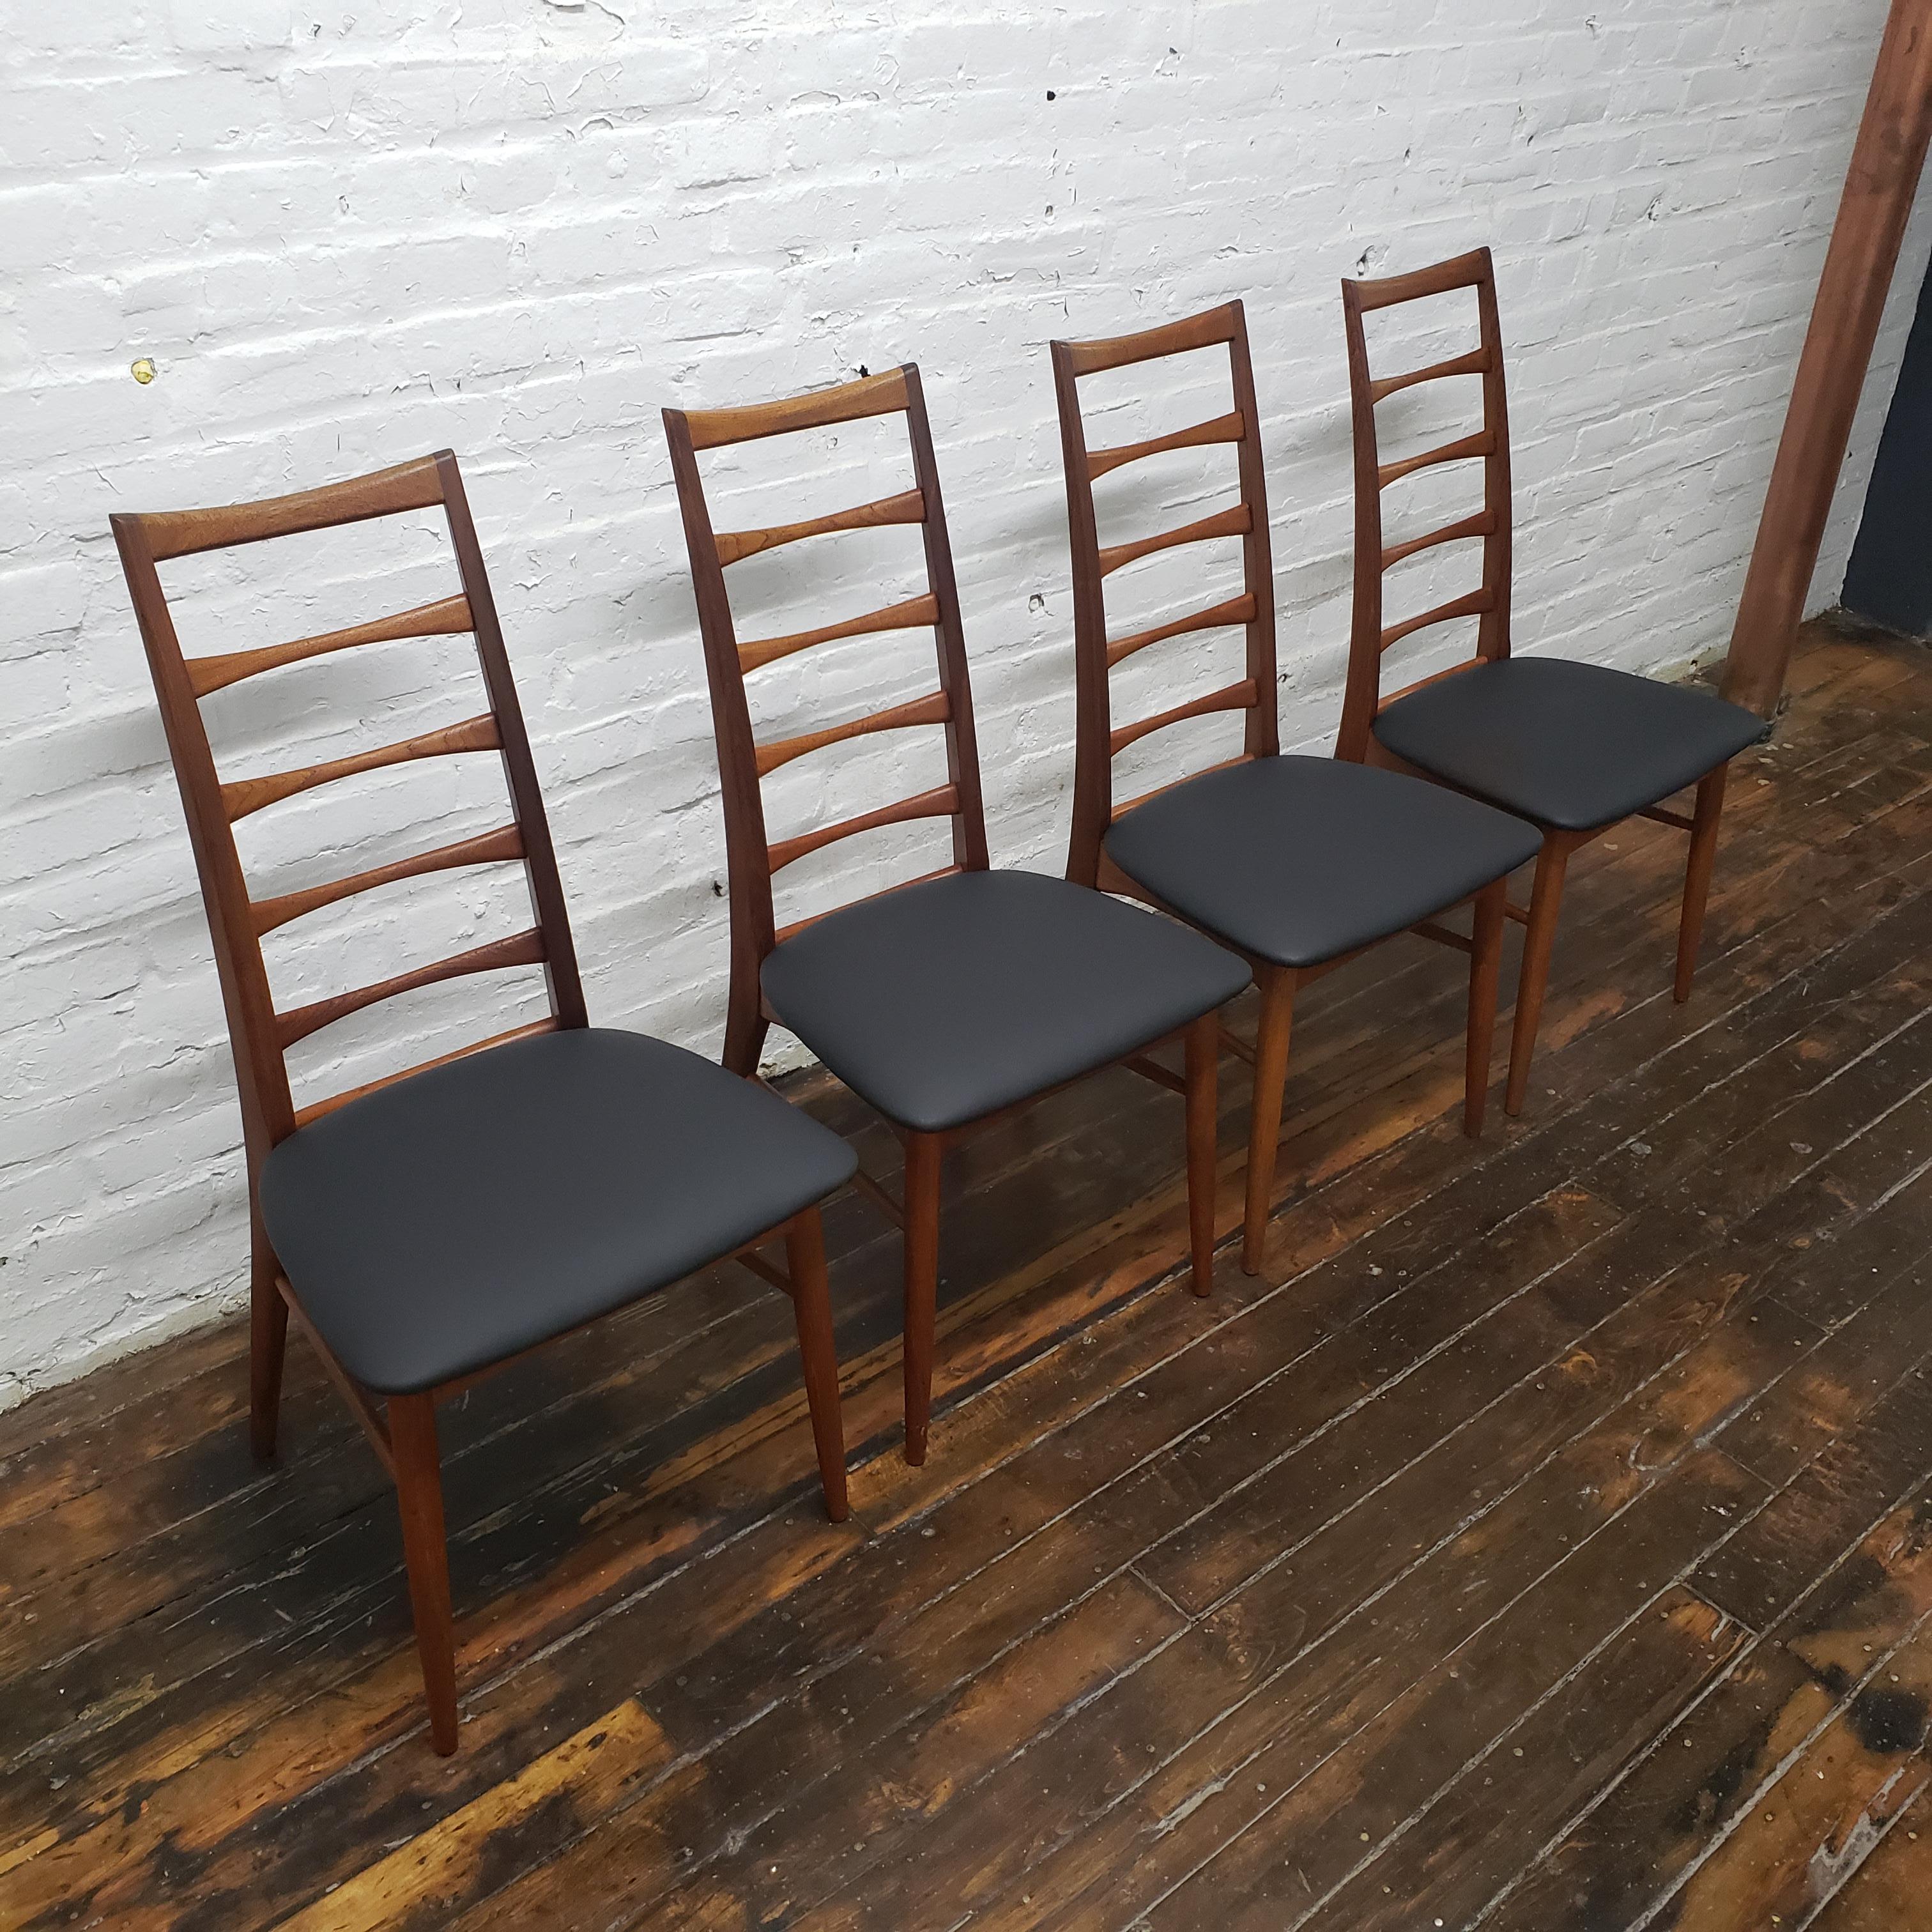 Set of Six Lis Dining Chair in Teak by Niels Koefoeds for Koefoeds Møbelfabrik 1